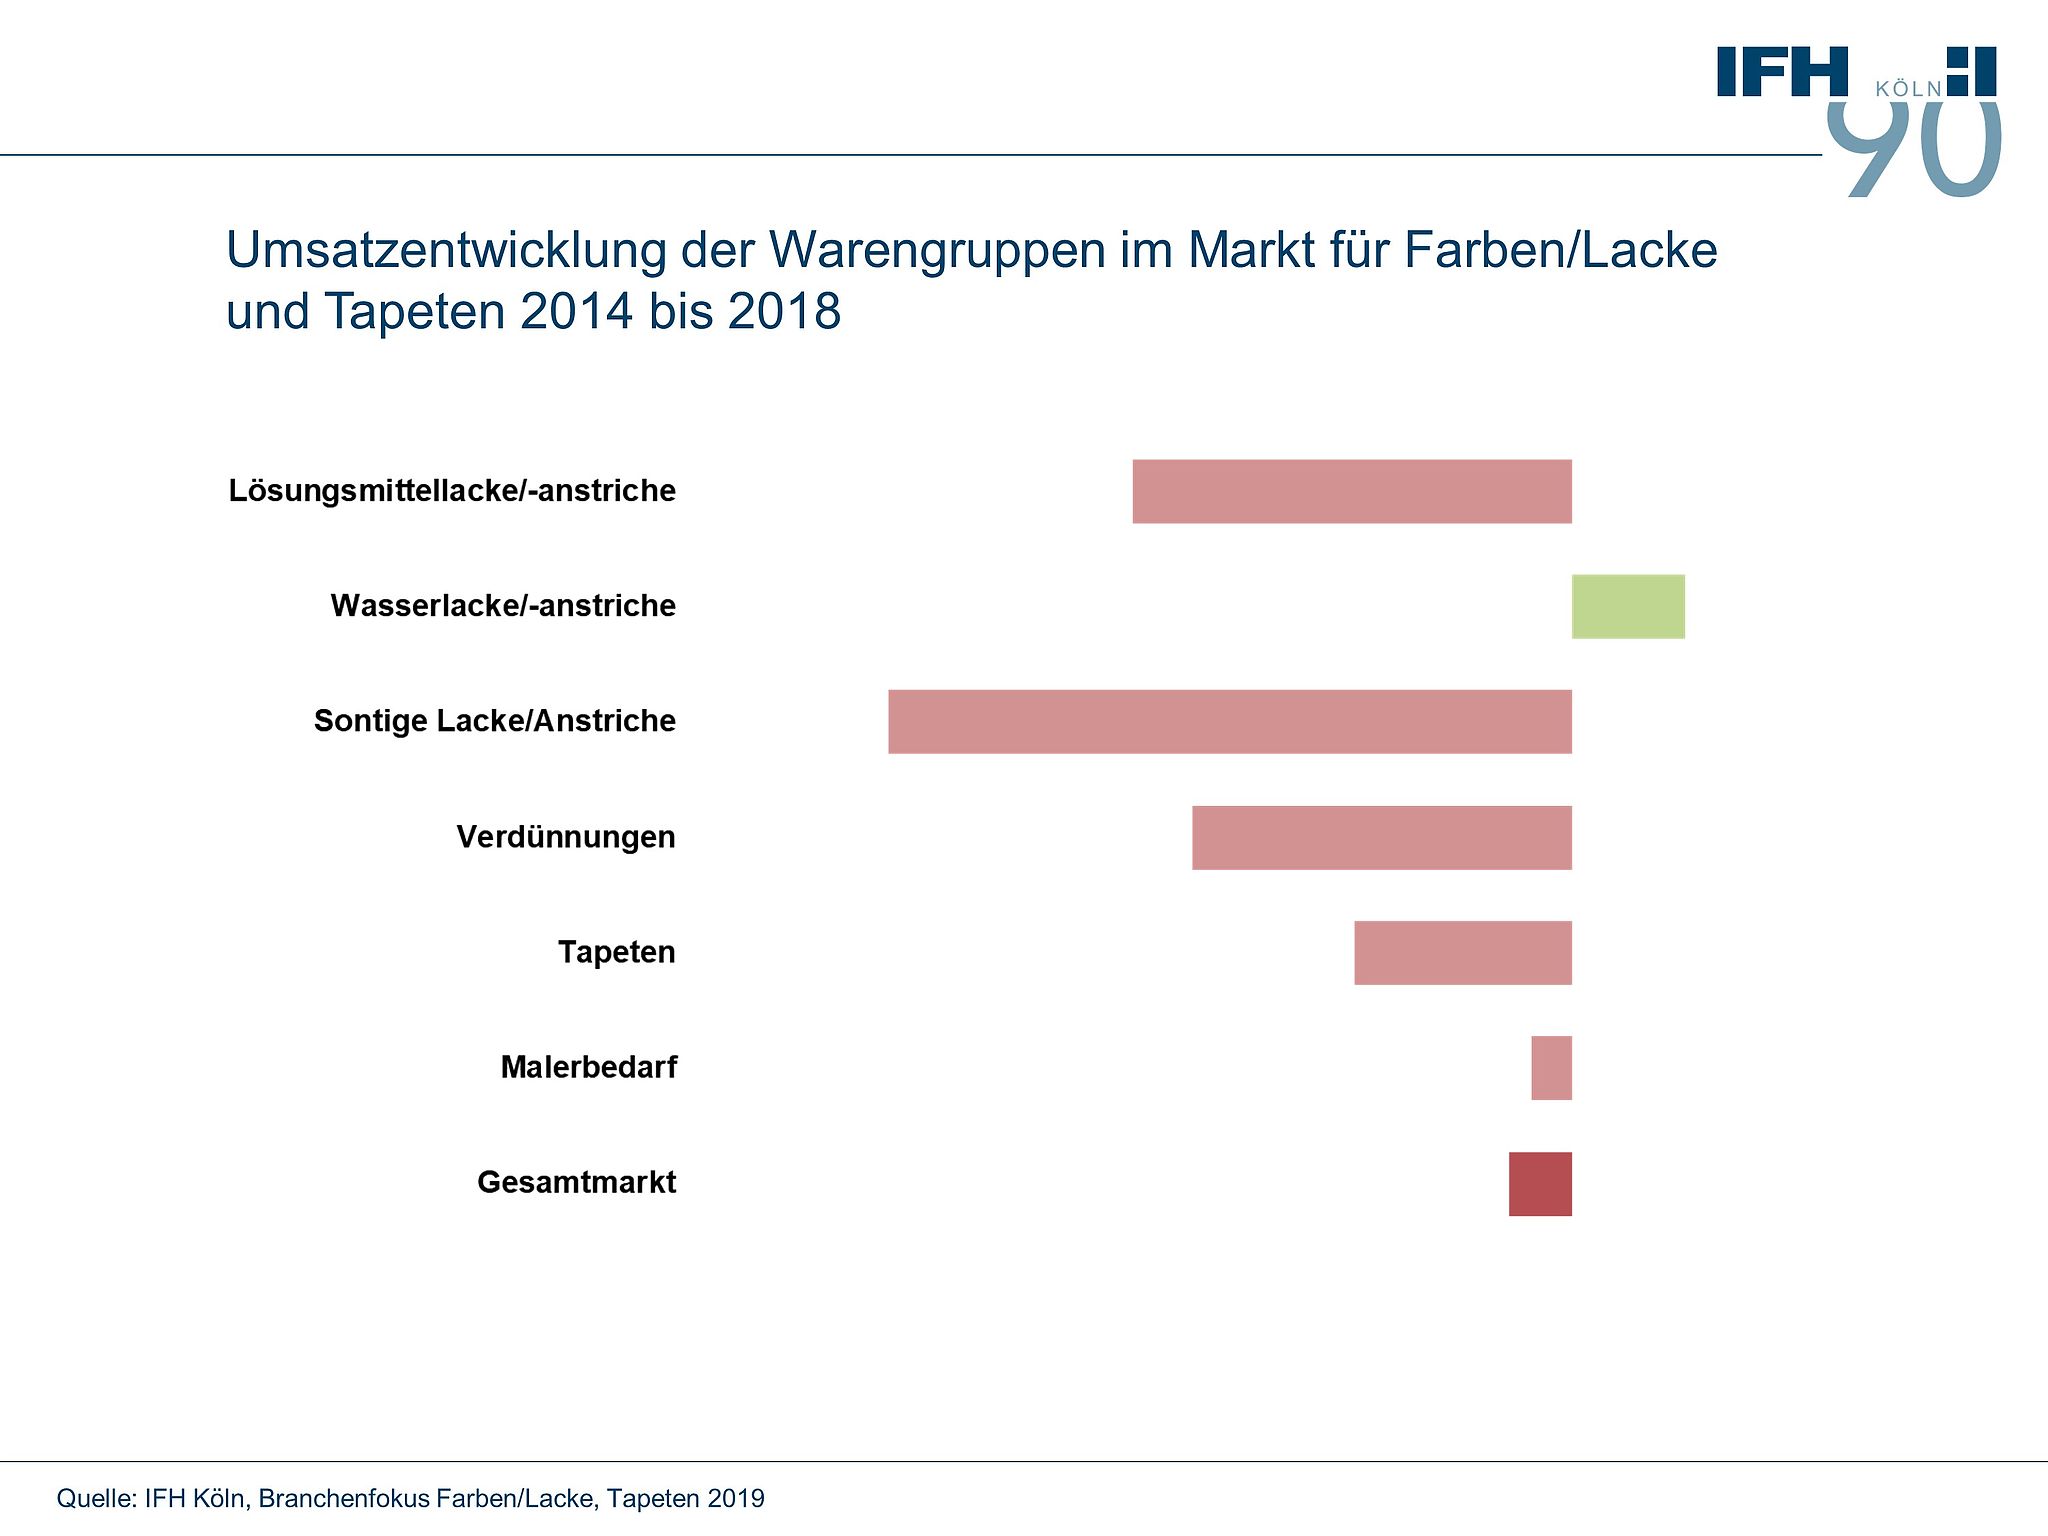 Umsatzentwicklung der Warengruppen im Markt für Farben, Lacke und Tapeten 2014 bis 2018